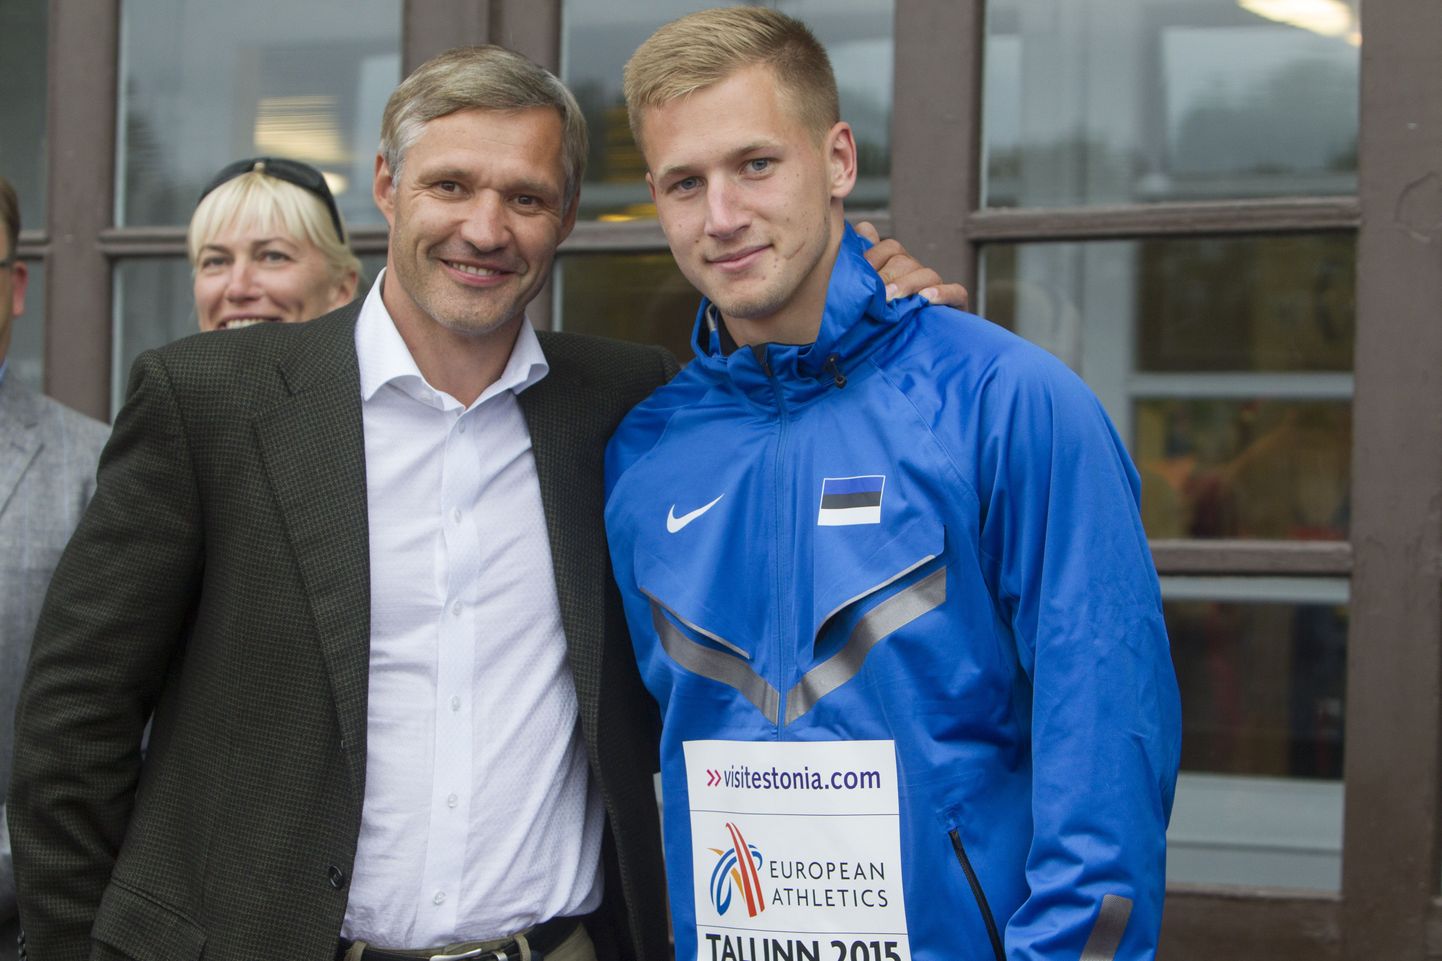 Olümpiavõitja Erki Nool (vasakul) ja Janek Õiglane 2015. aastal Kadriorus peetud U23 vanuseklassi Euroopa meistrivõistlustel, kus Õiglane võitis pronksmedali.